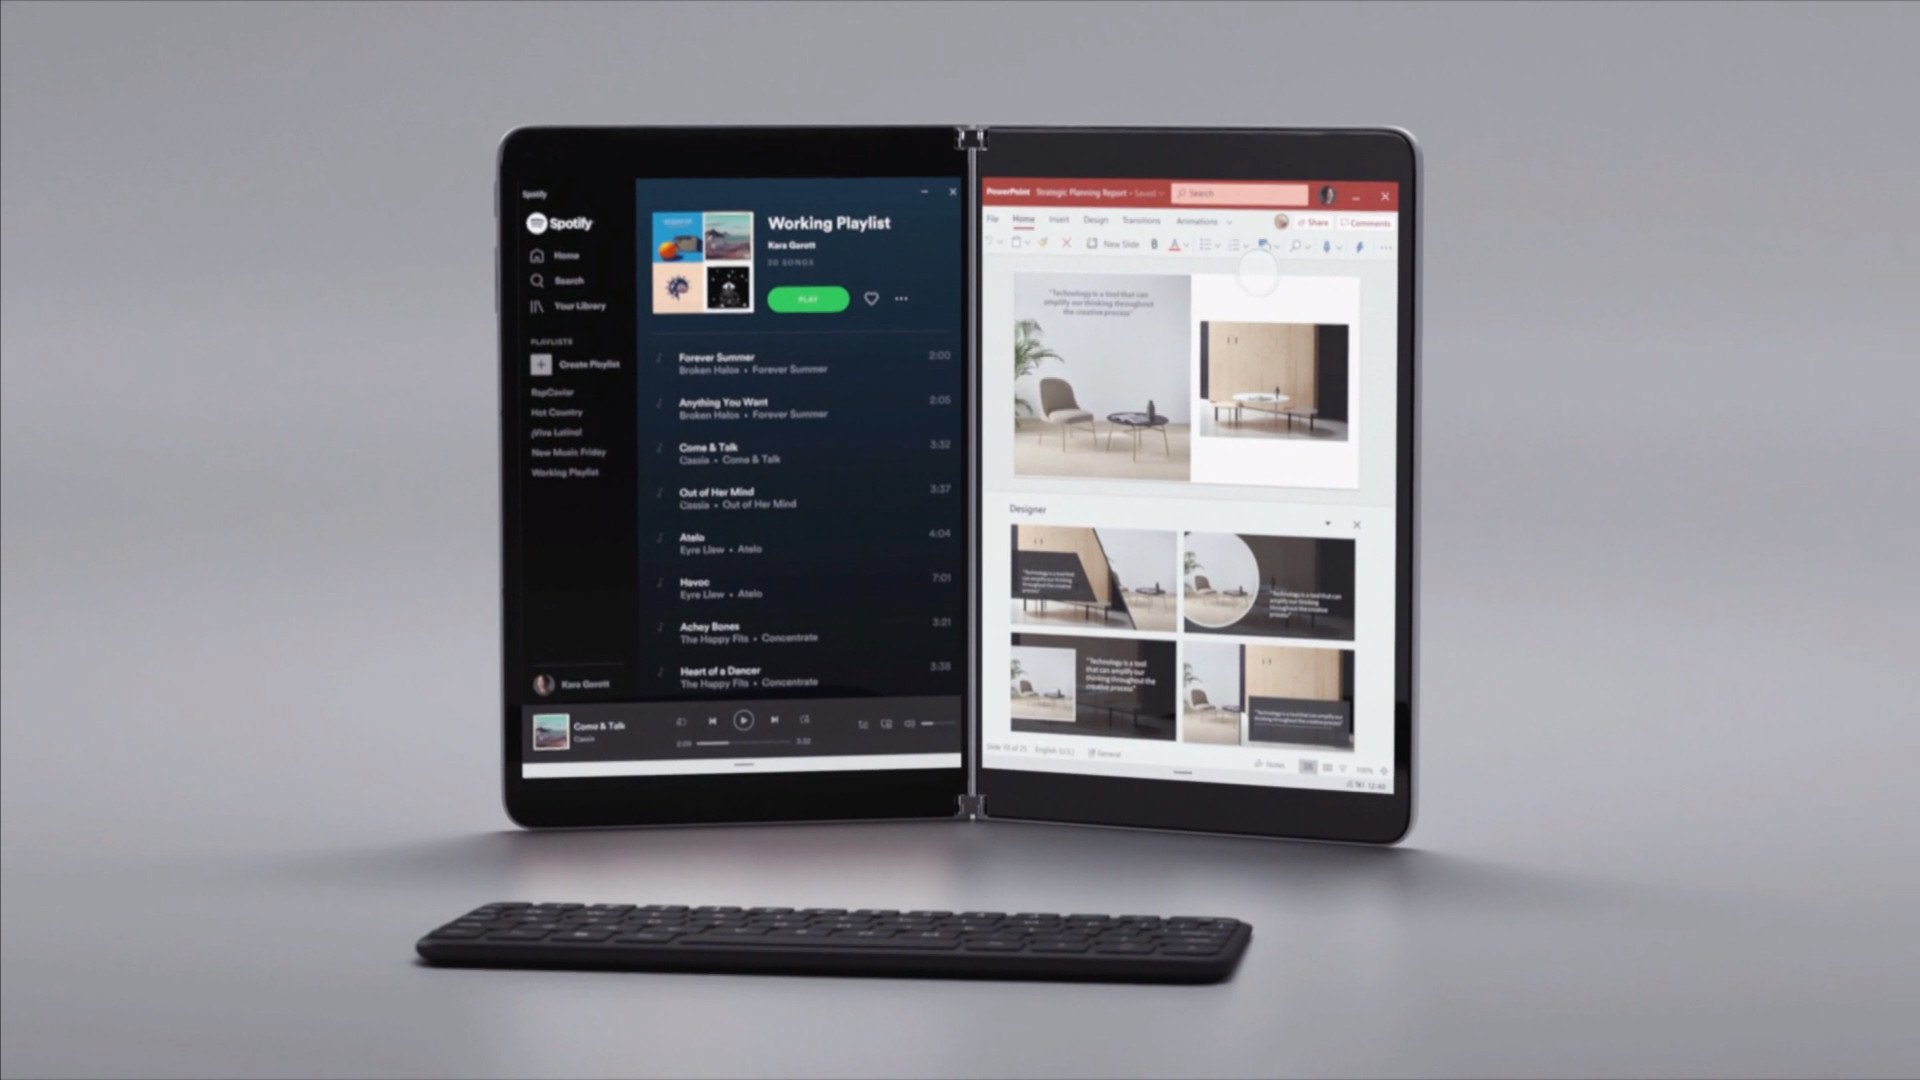 Microsoft Surface Neo cena premiera specyfikacja techniczna komputer z Windows 10X kiedy kupić w sprzedaży